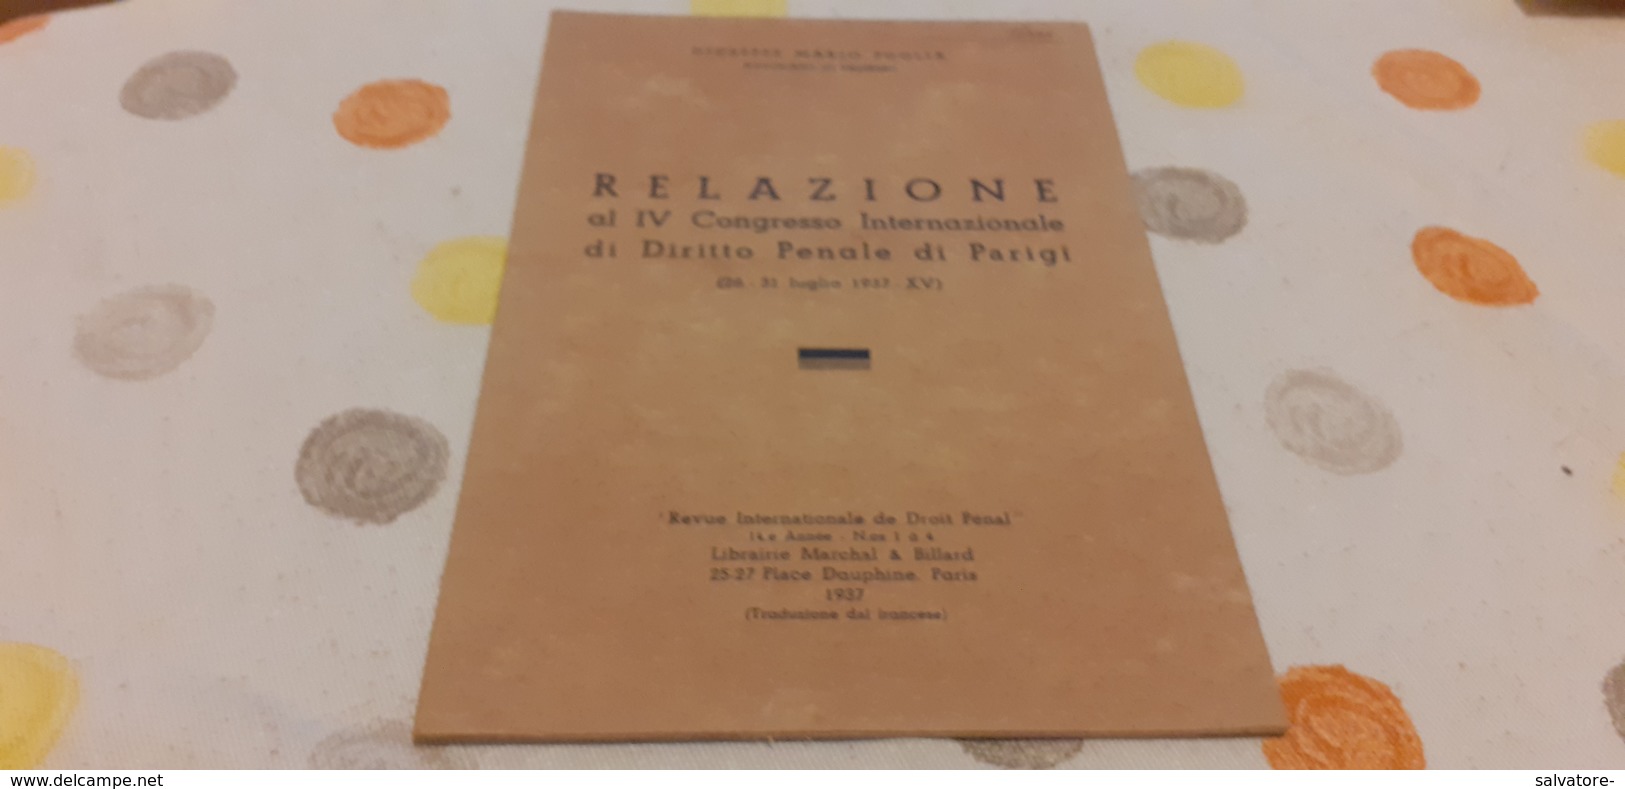 RELAZIONE AL IV CONGRESSO INTERNAZIONALE DI DIRITTO PENALE DI PARIGI- MARIO PUGLIA- 1937 - Derecho Y Economía